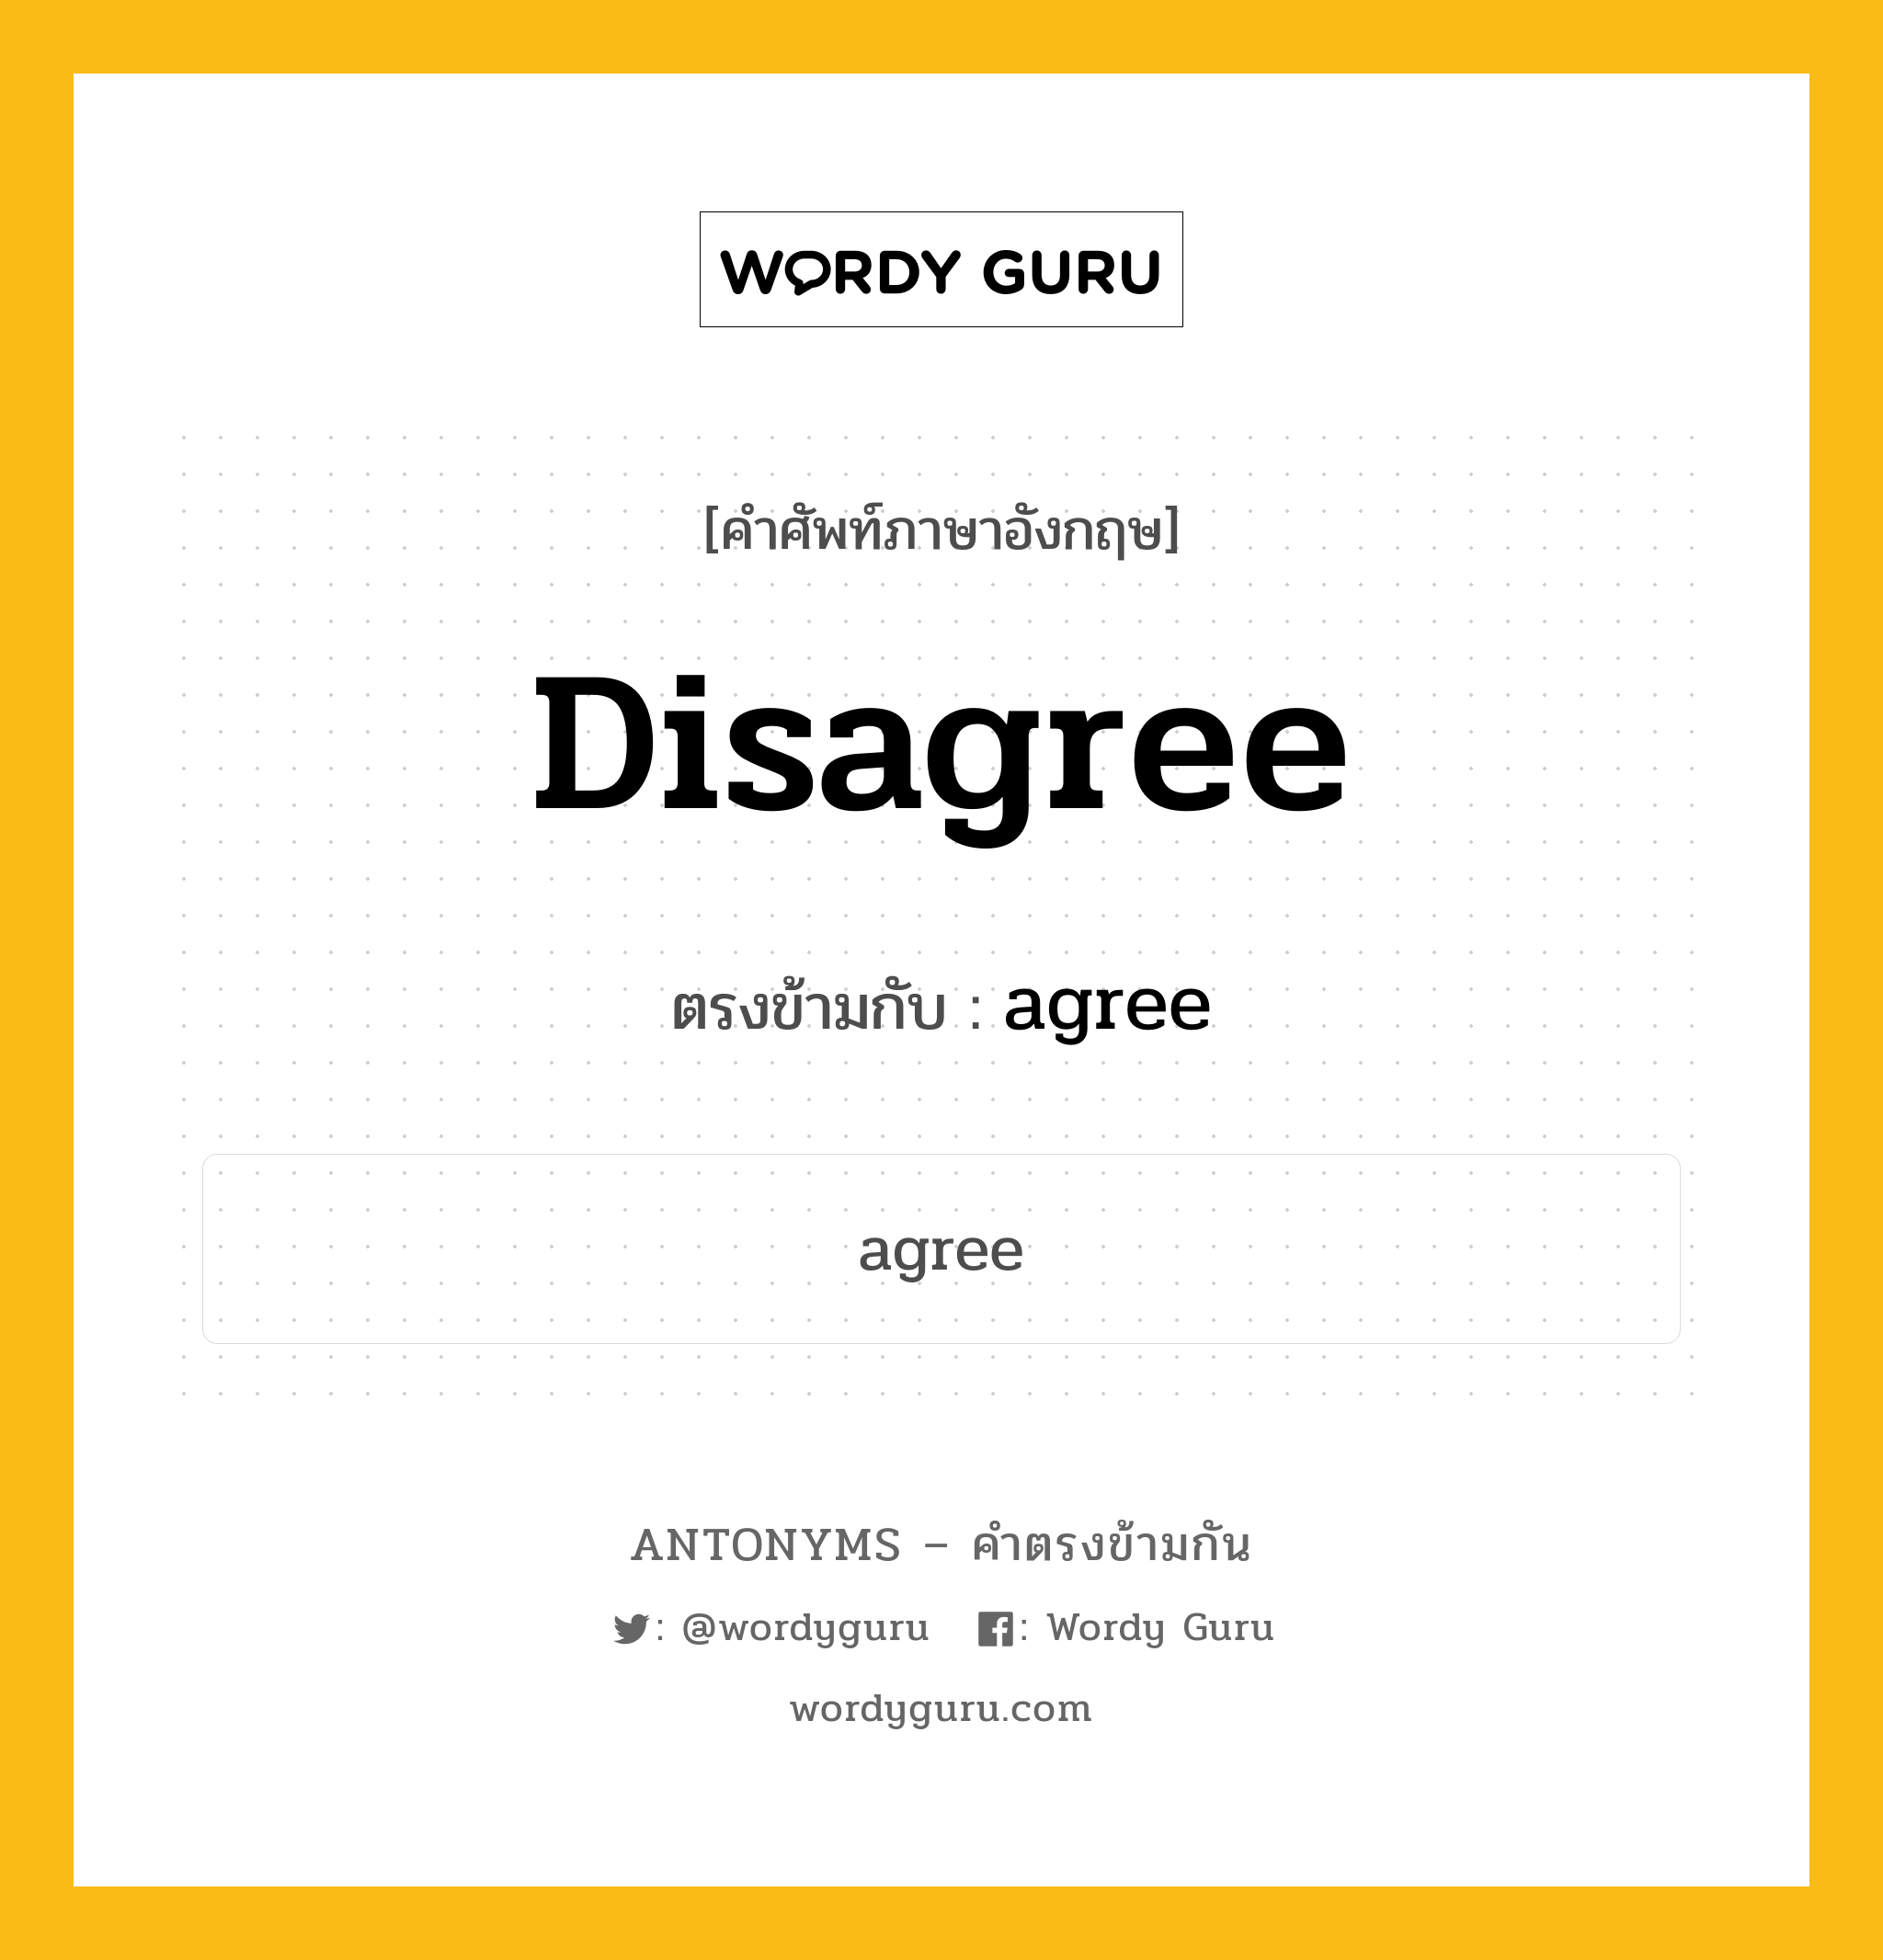 disagree เป็นคำตรงข้ามกับคำไหนบ้าง?, คำศัพท์ภาษาอังกฤษ disagree ตรงข้ามกับ agree หมวด agree